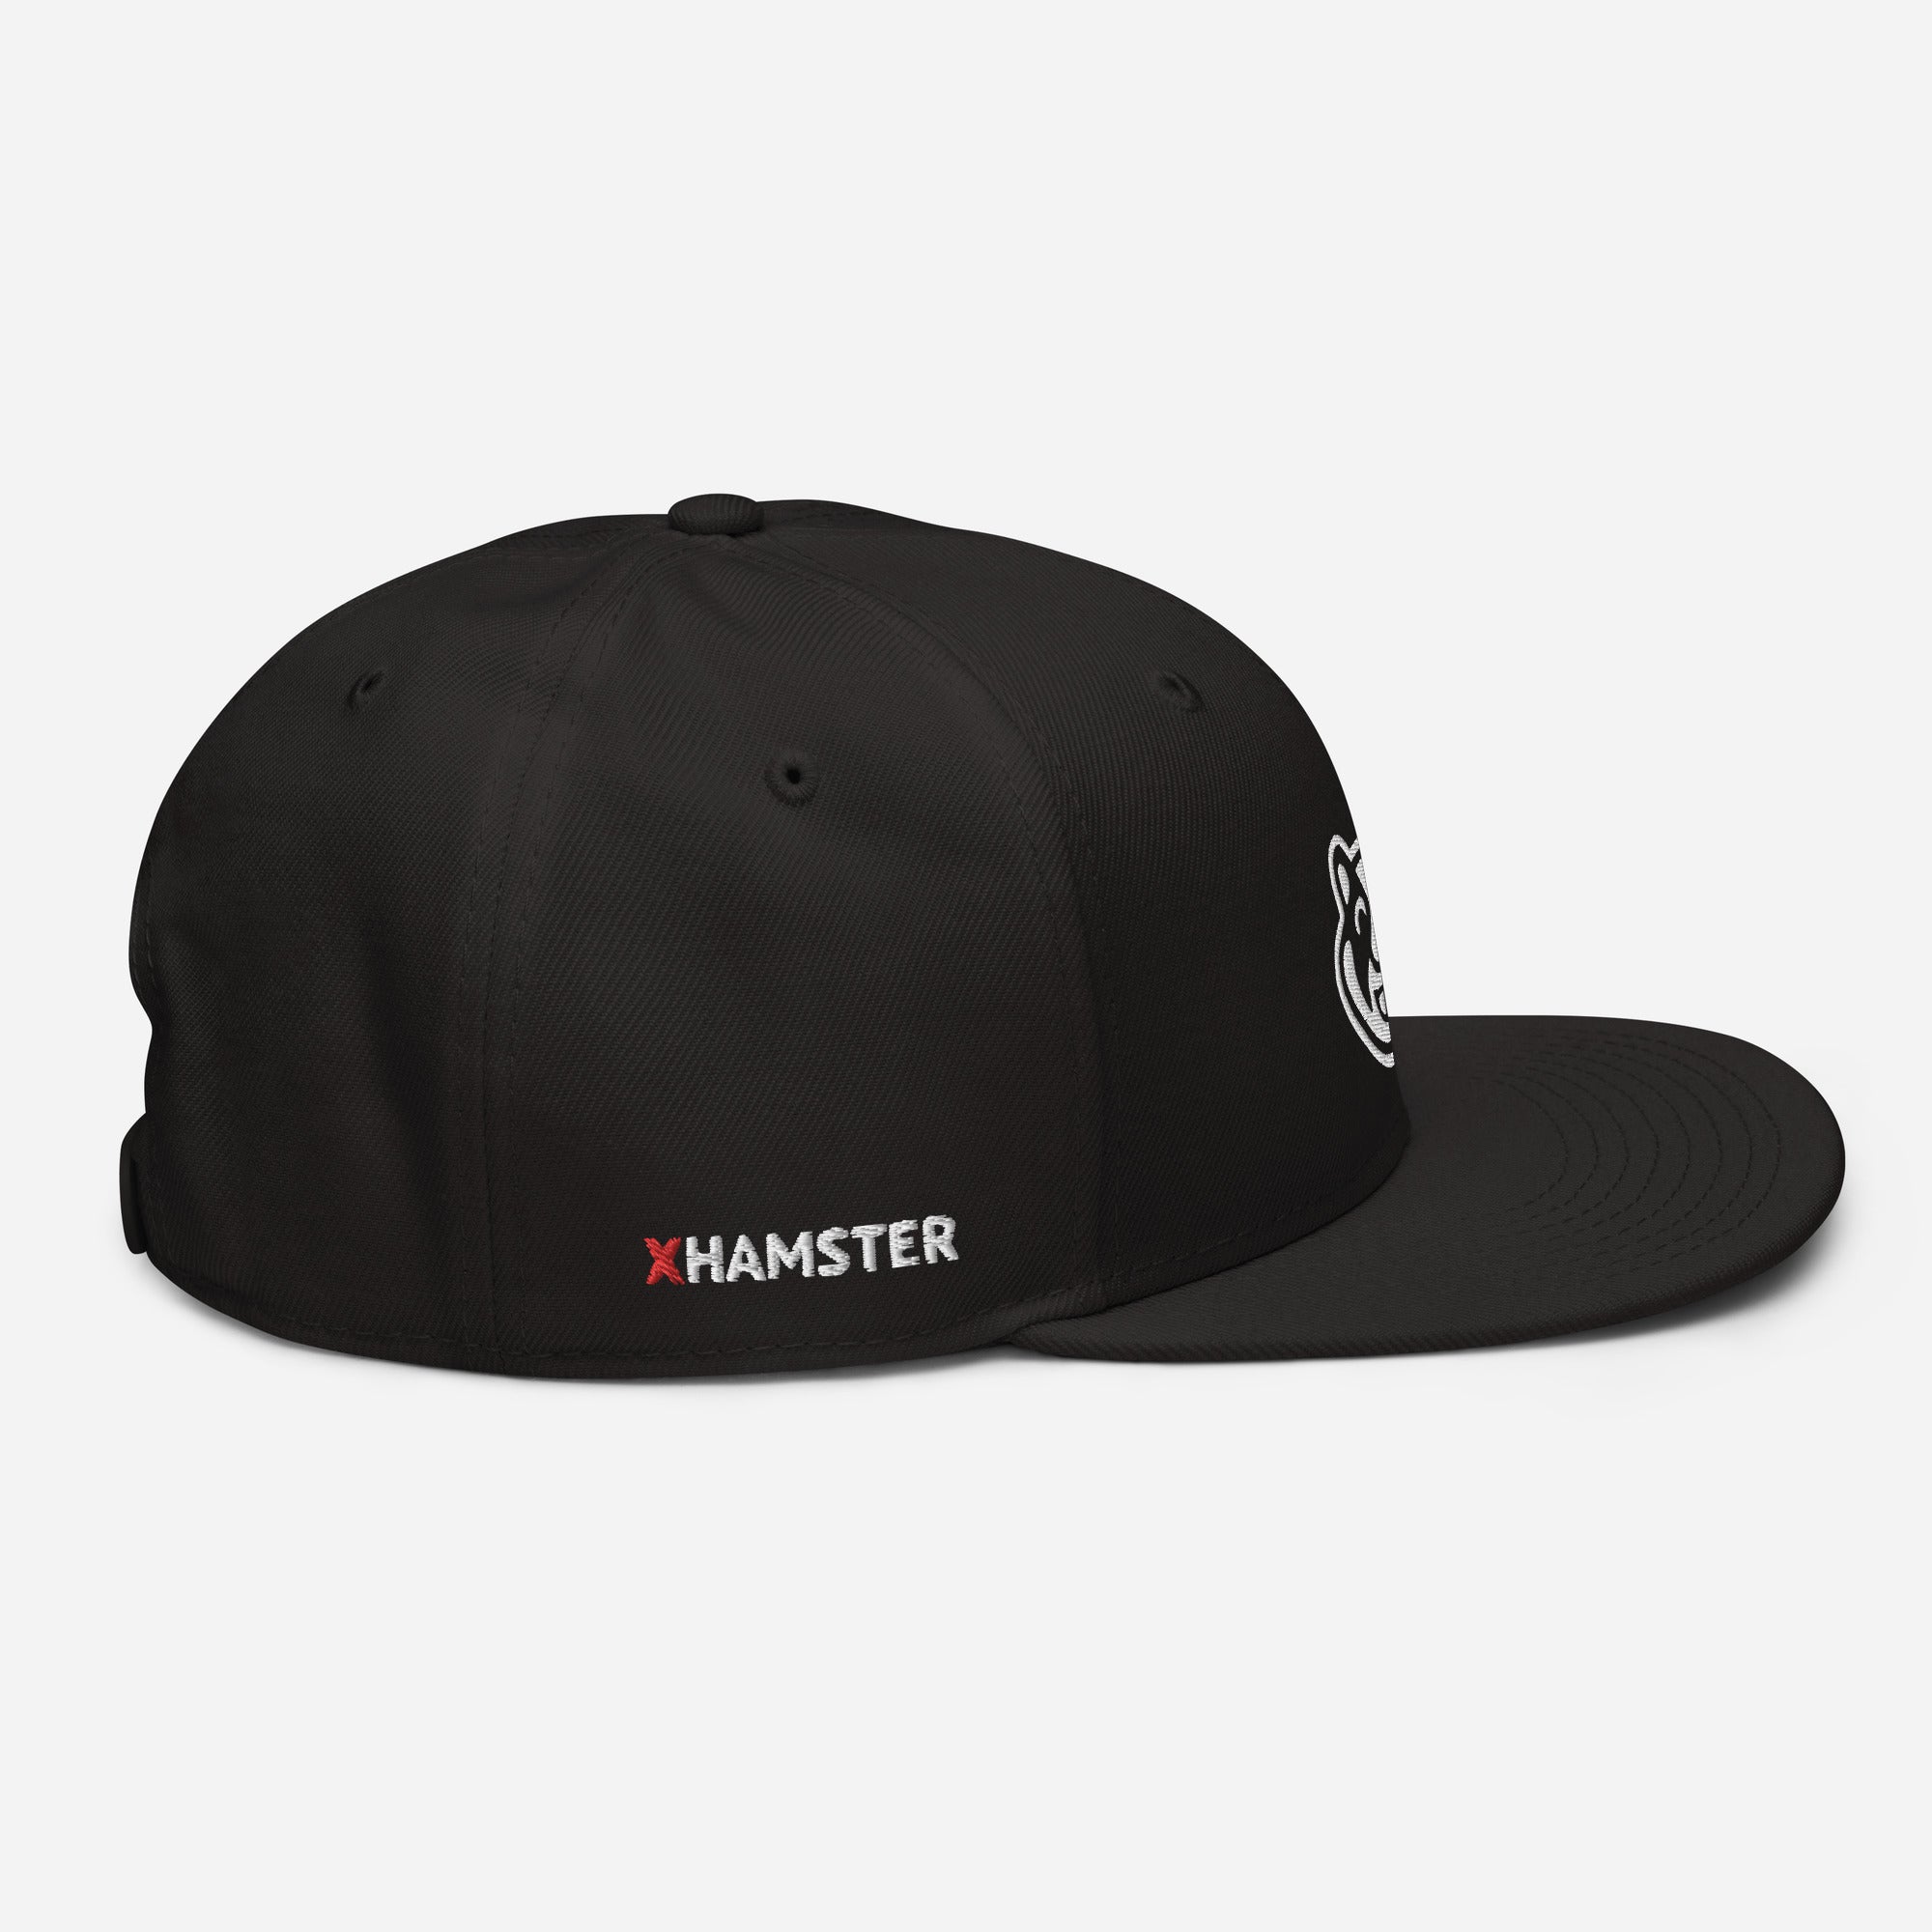 xHamster Black Snapback Cap